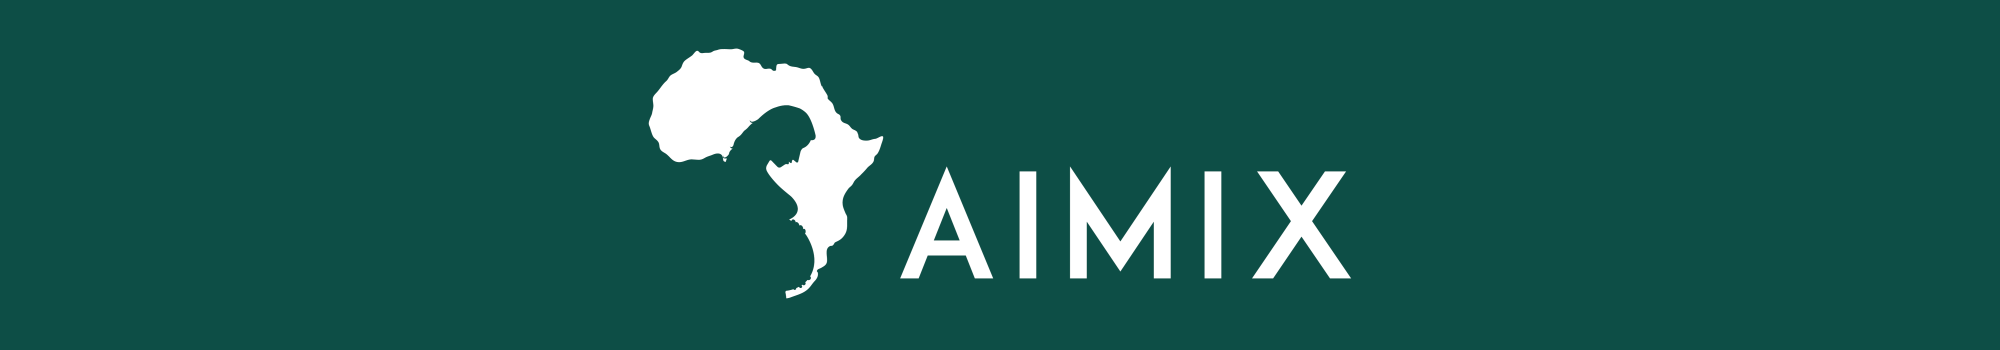 AIMIX_Logo-Green